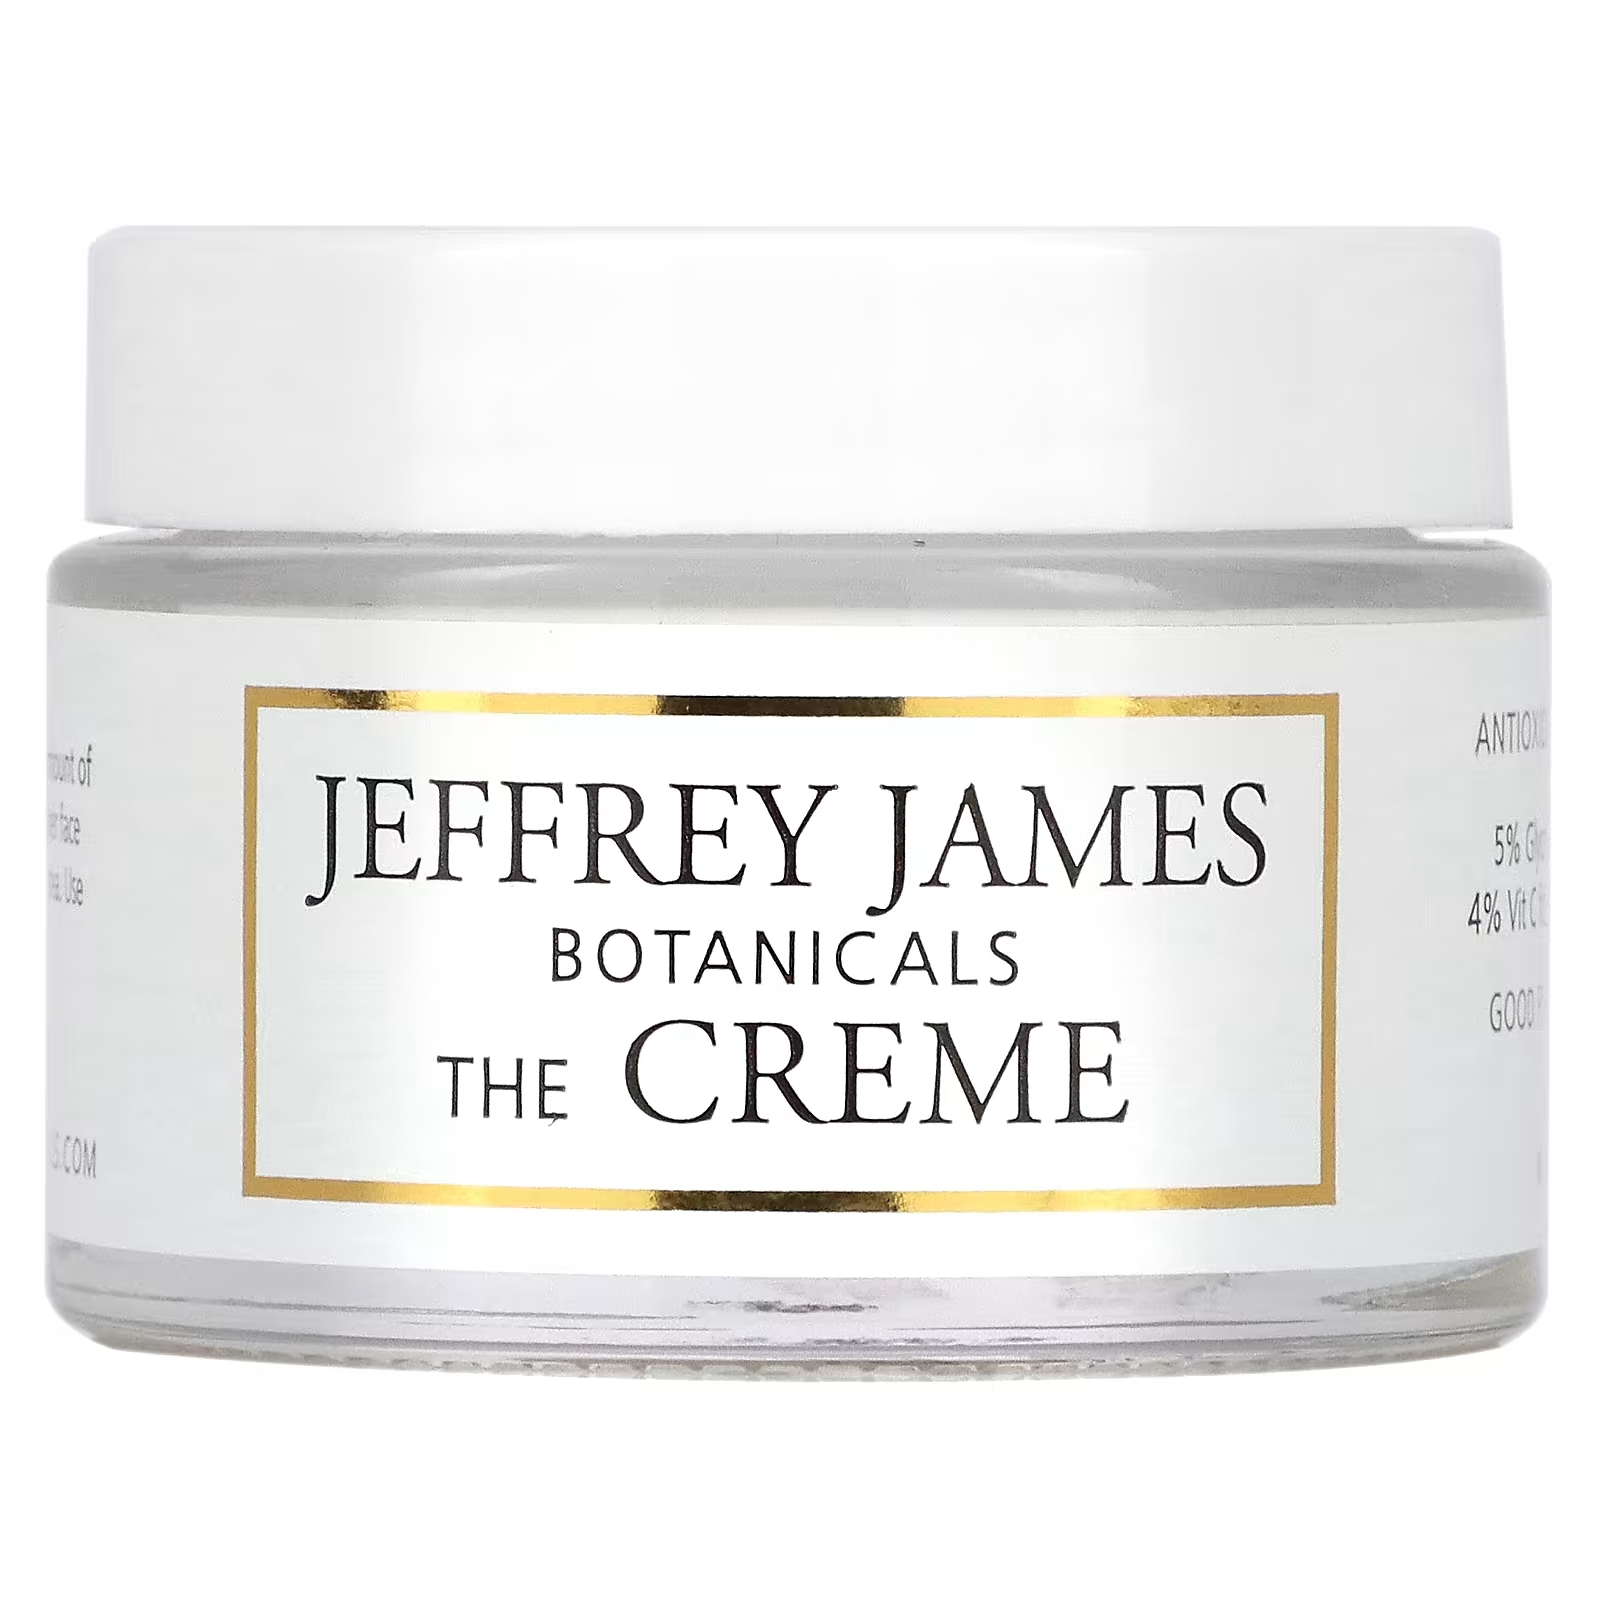 Крем Jeffrey James Botanicals The Creme All Day & All Night с витамином С, 59 мл neocell super collagen plus с витамином c и гиалуроновой кислотой 390 г 13 7 унции